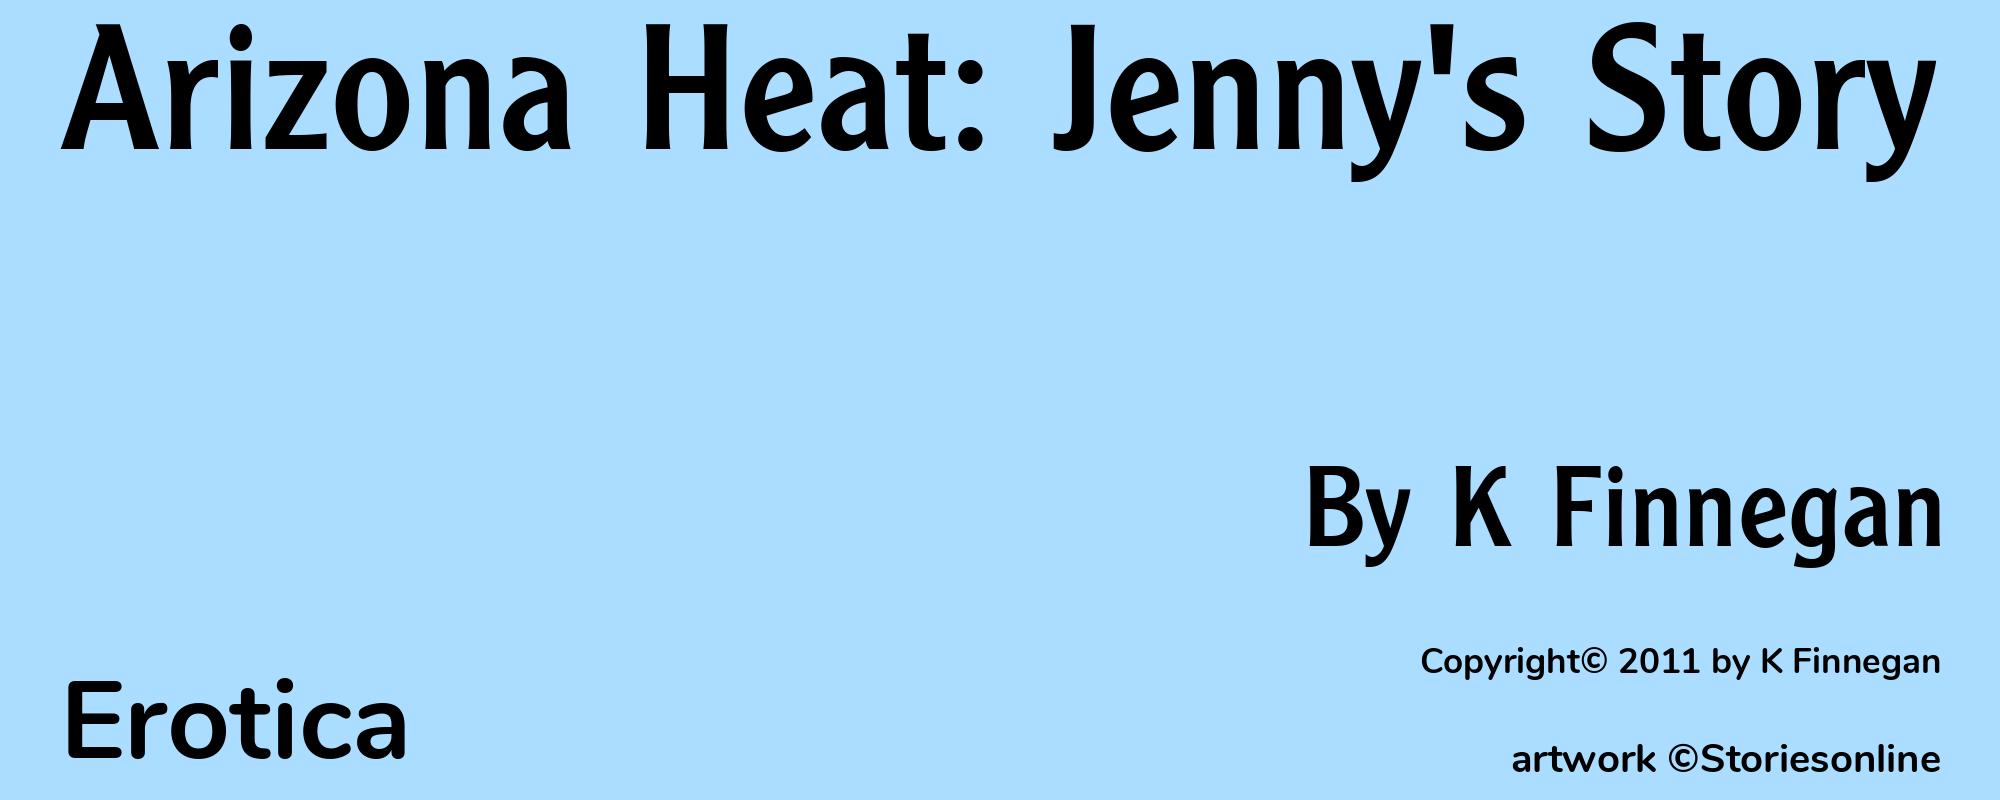 Arizona Heat: Jenny's Story - Cover